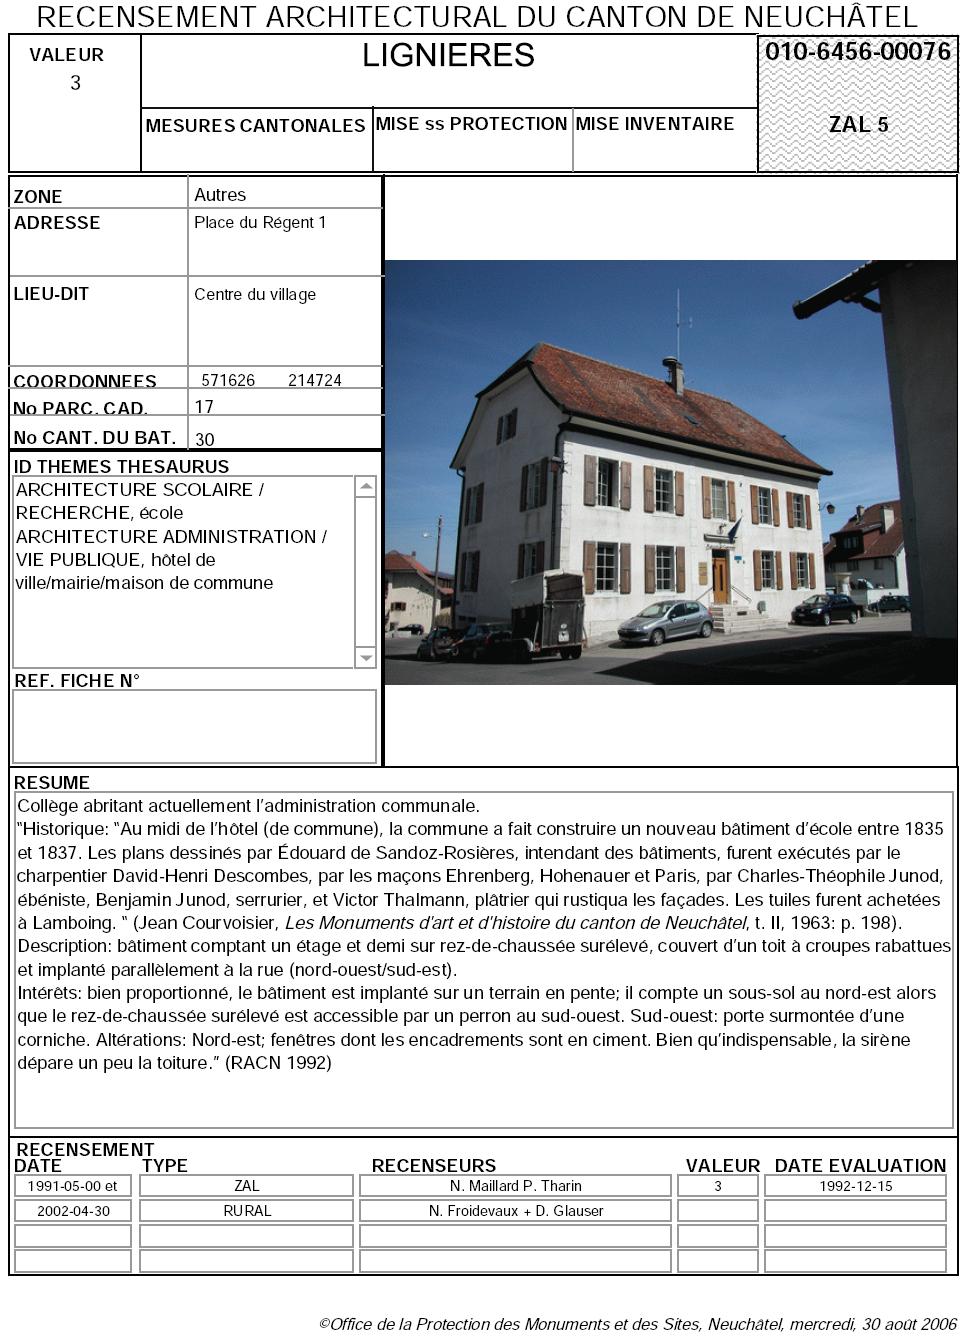 Recensement architectural du canton de Neuchâtel: Fiche 010-6456-00076